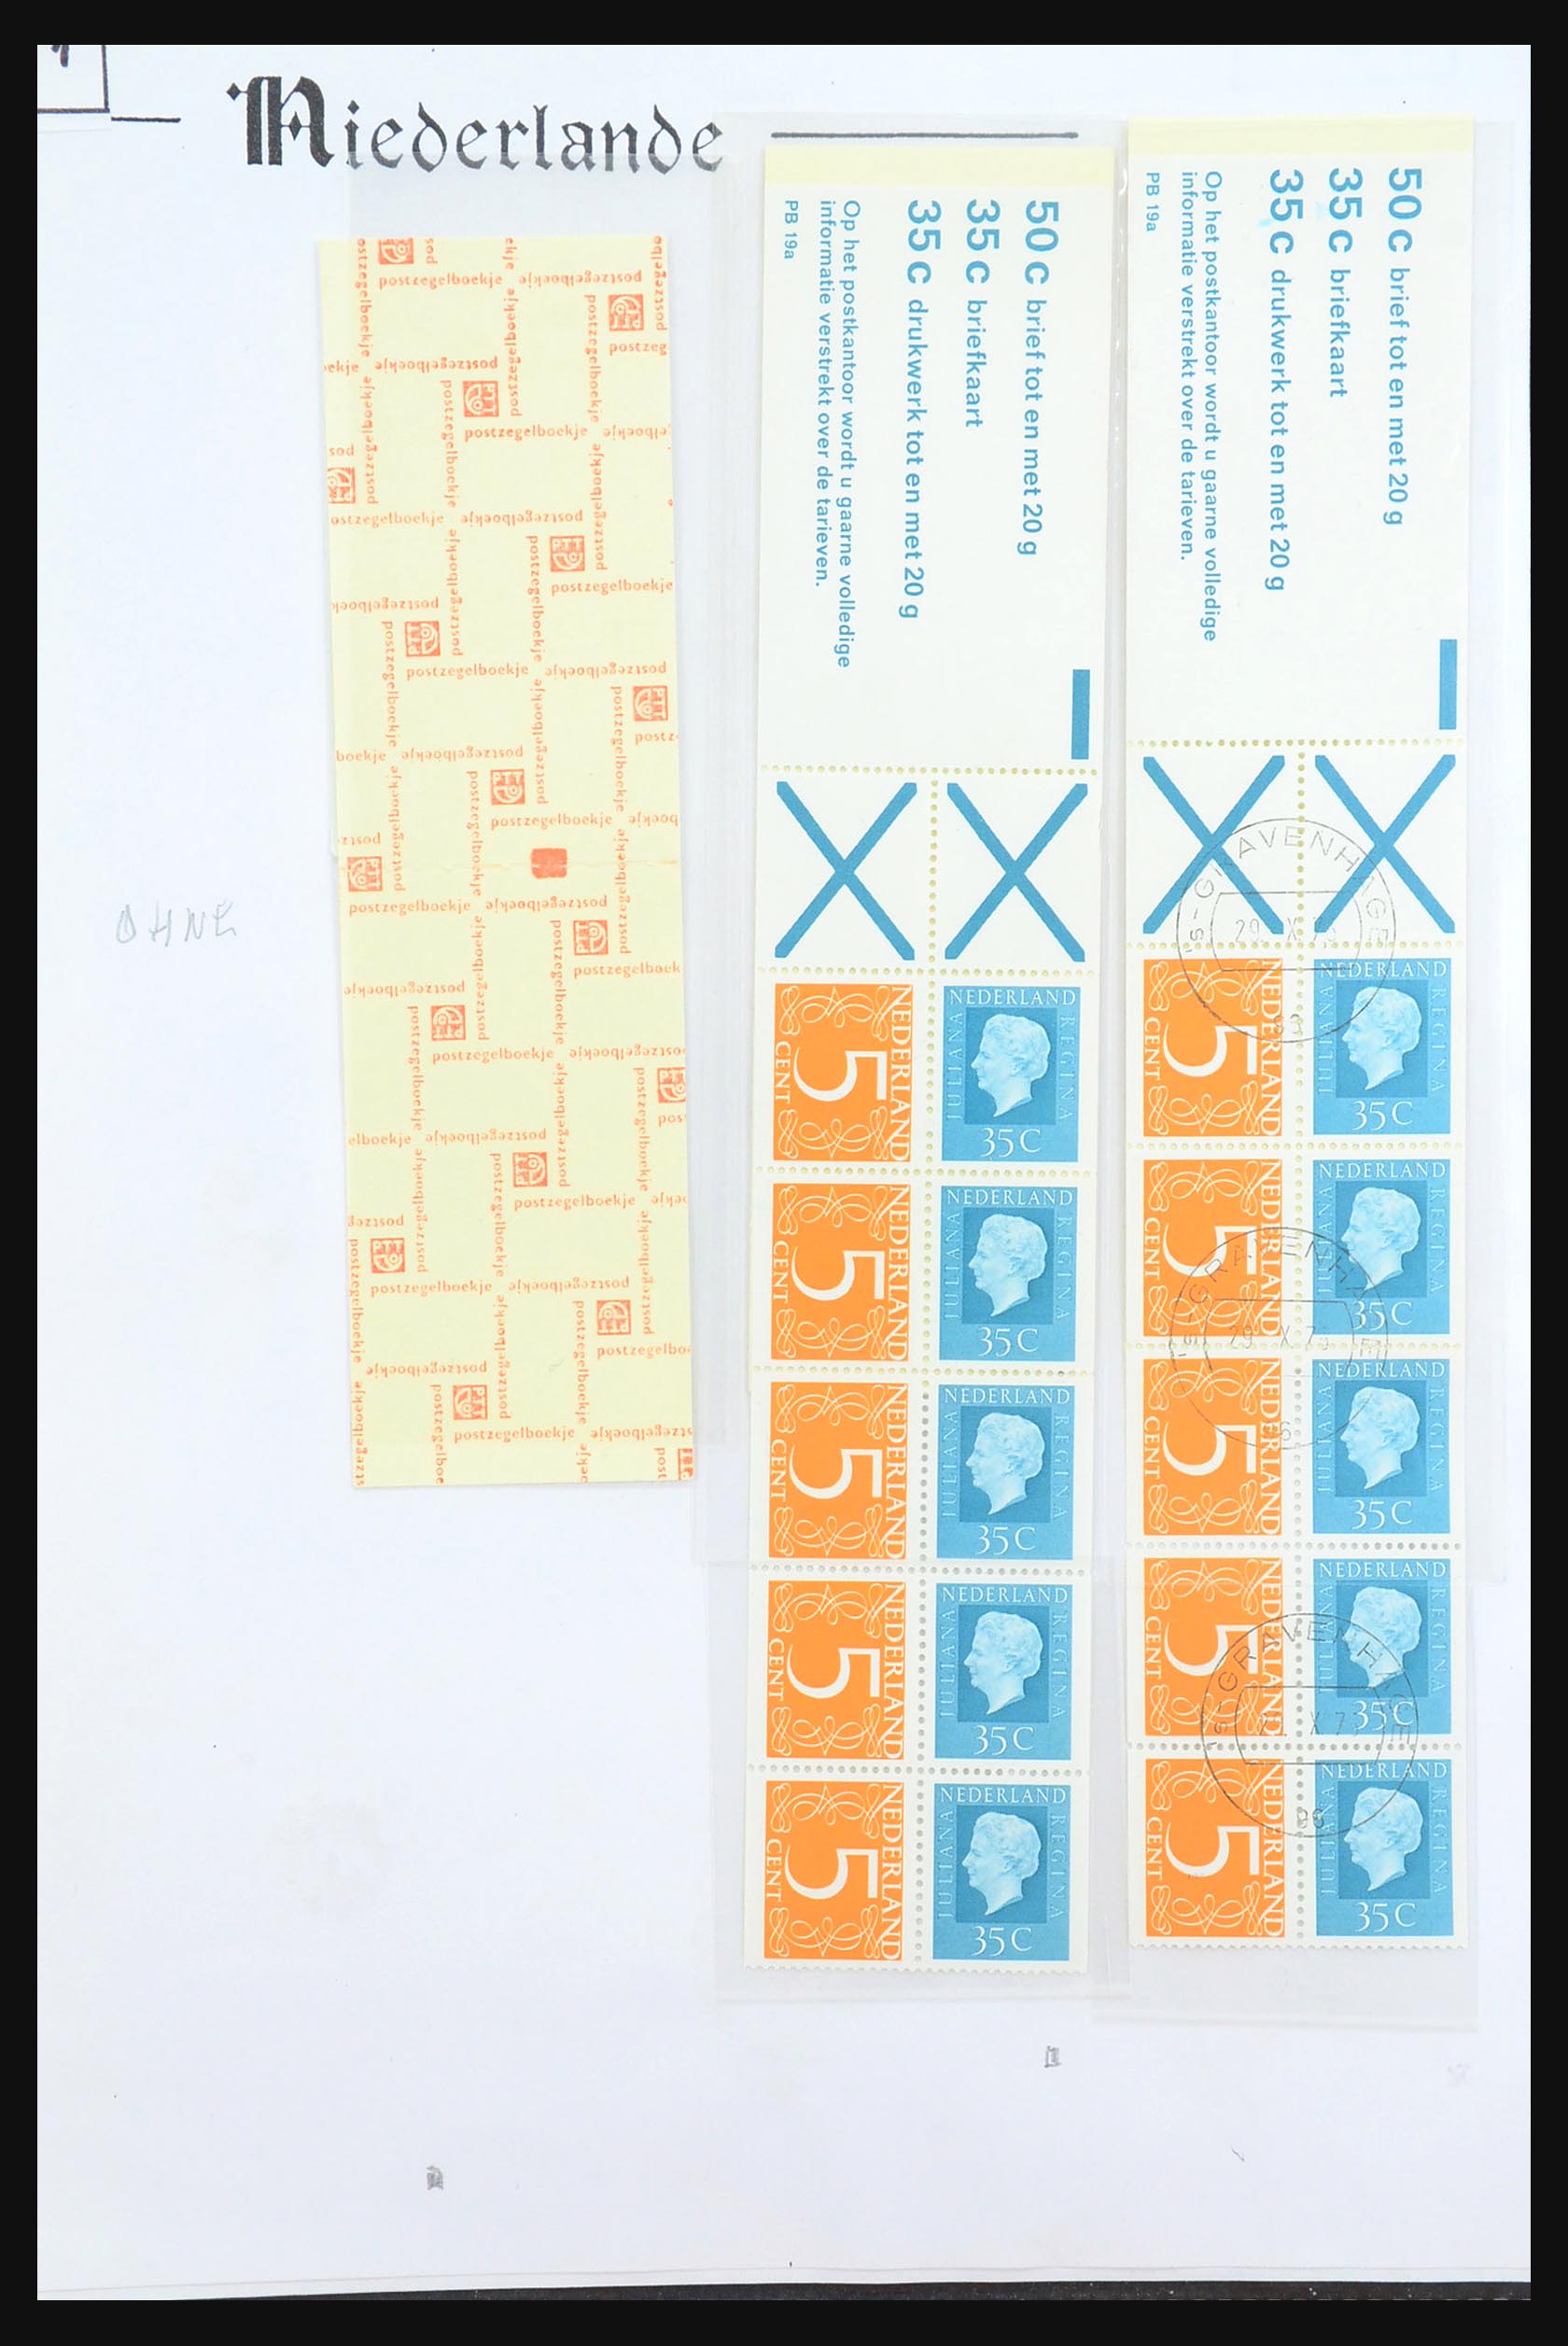 31311 065 - 31311 Netherlands stamp booklets 1964-1994.